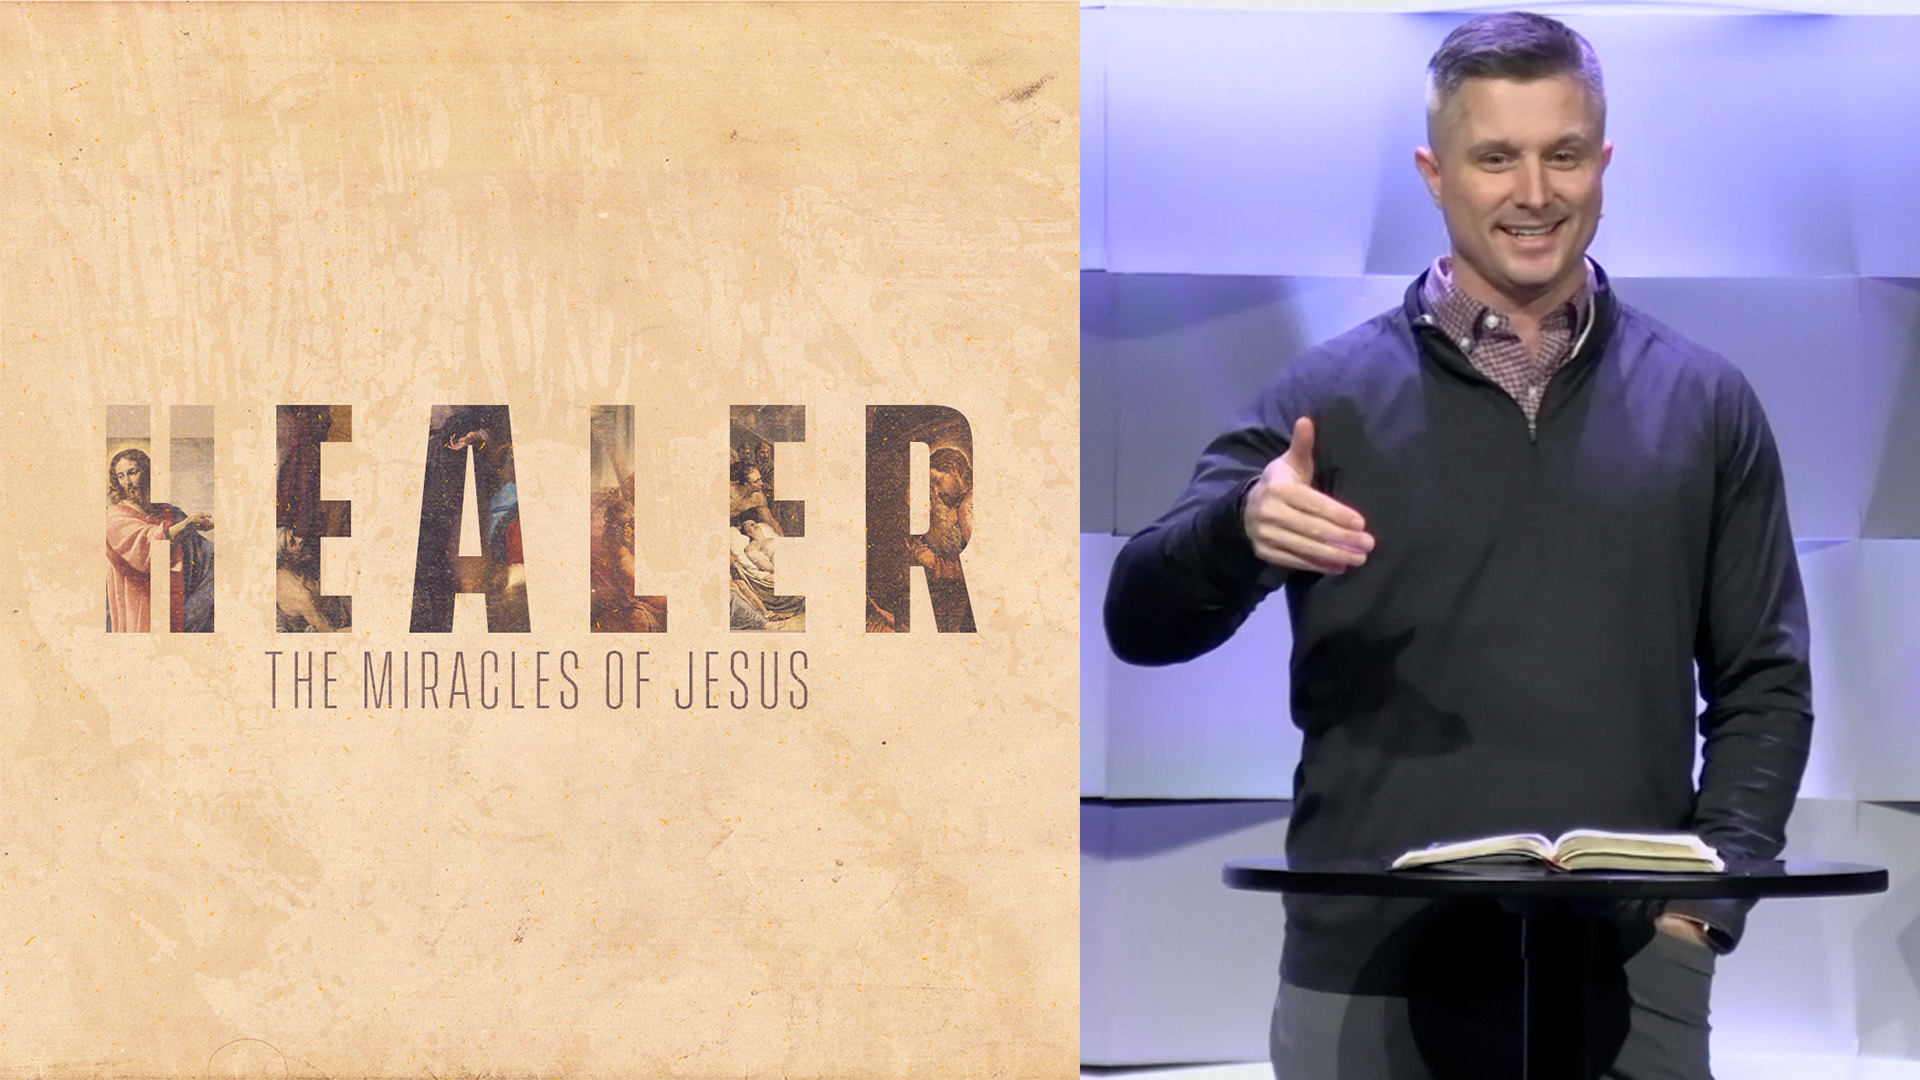 Healer - The Miracles of Jesus - Week Three